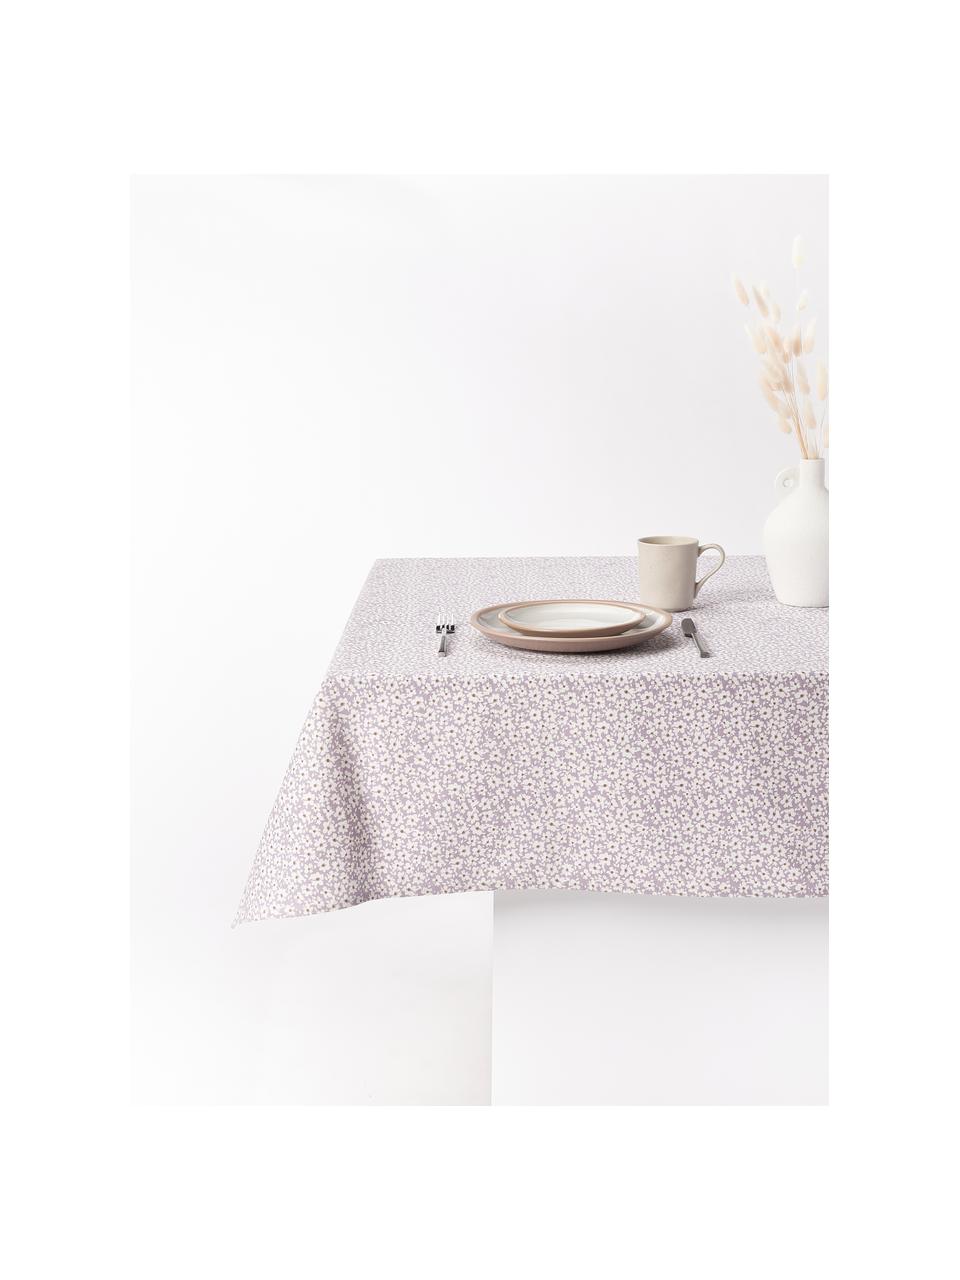 Tischdecke Liberte mit Blumenmuster, 100 % Bauwmolle, Lavendel, Off White, 6-8 Personen (B 140 x L 220 cm)